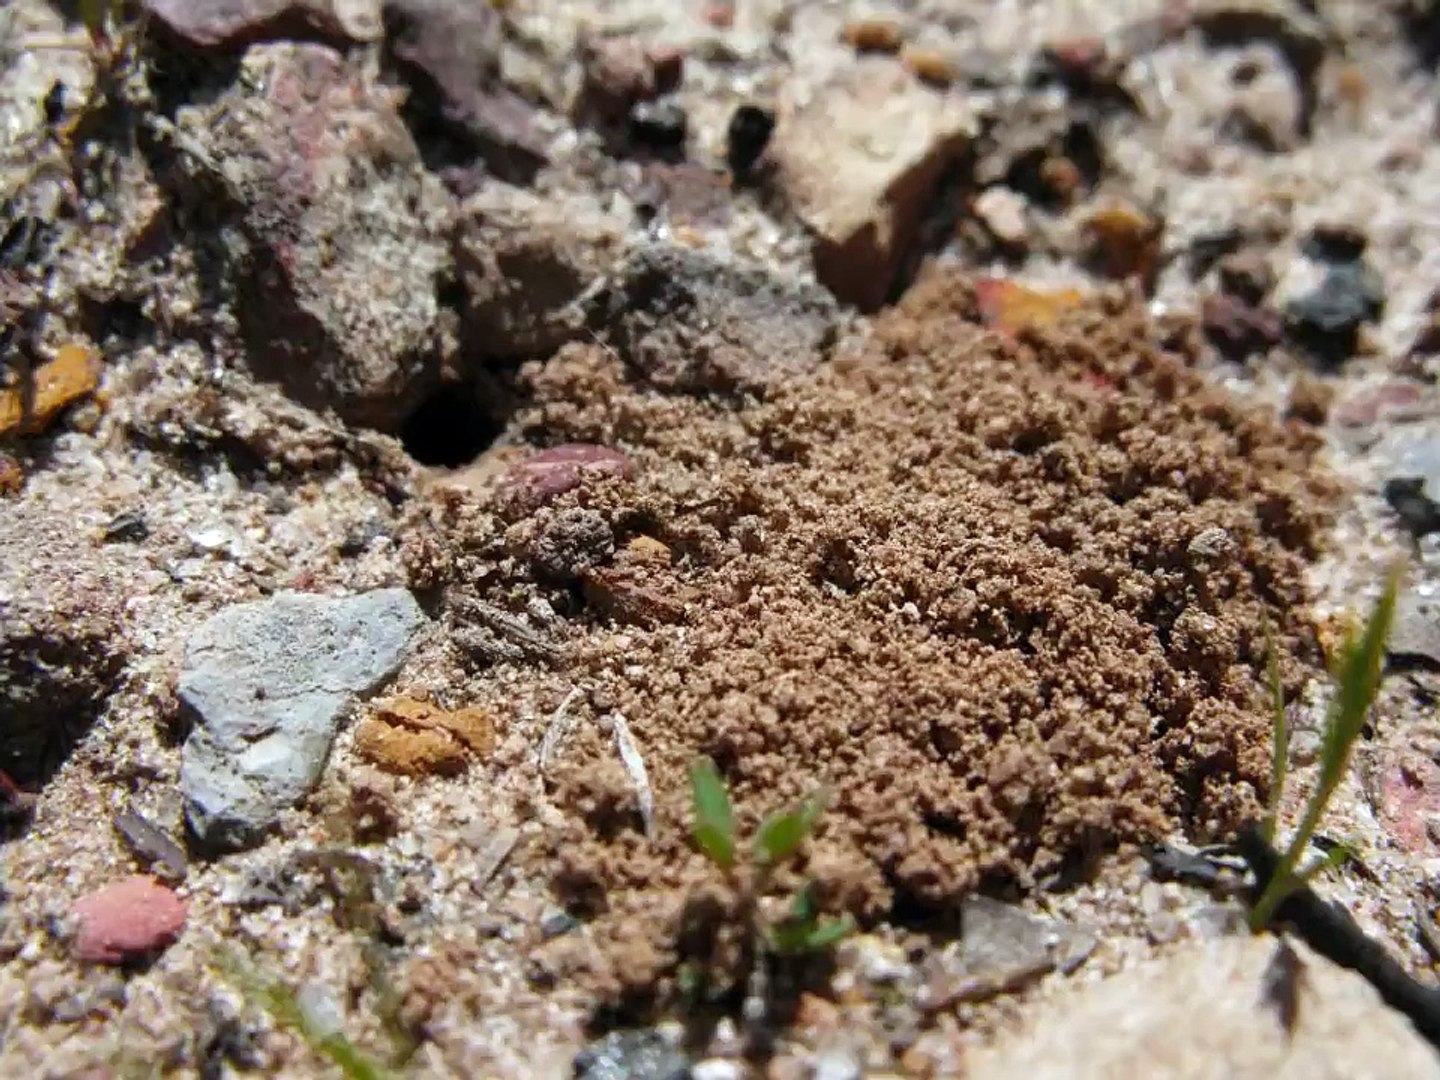 Finding Queen Ants